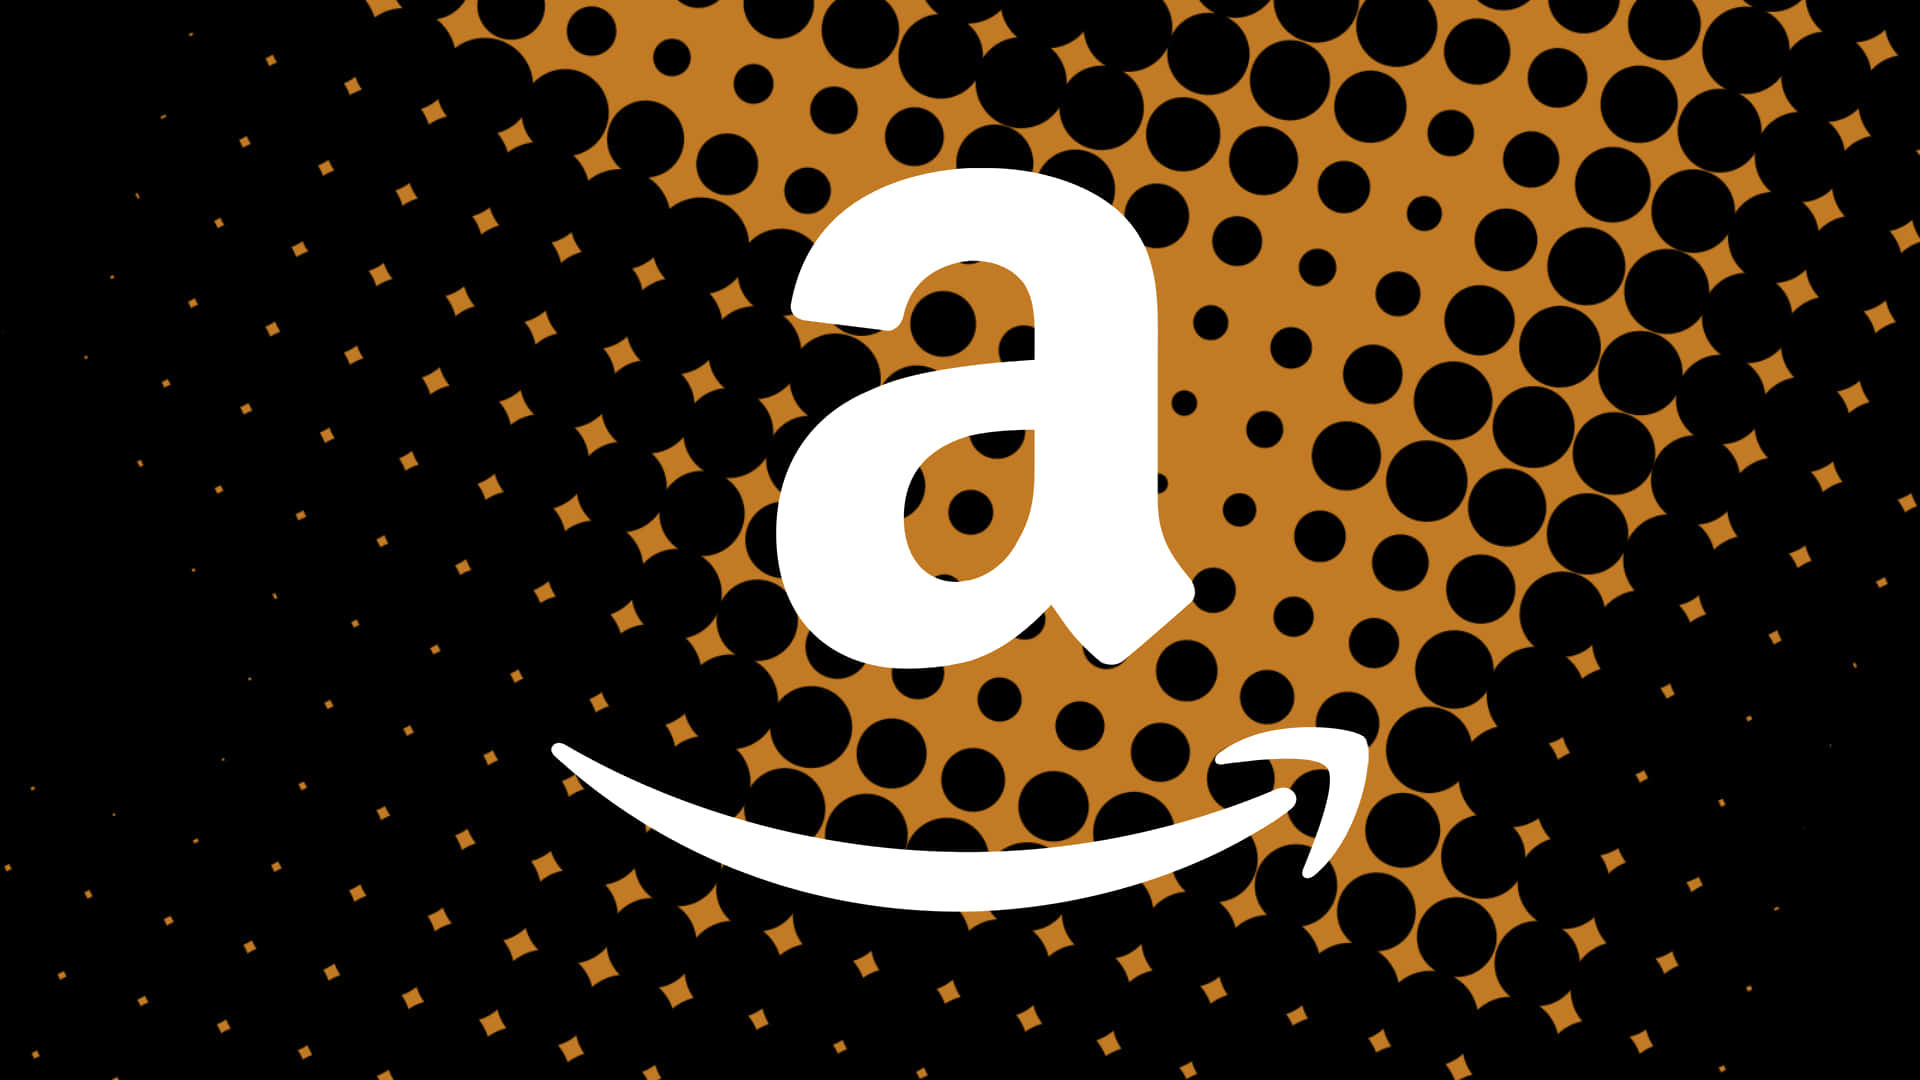 Logotipode Amazon Uk En Formato Gráfico De Puntos. Fondo de pantalla